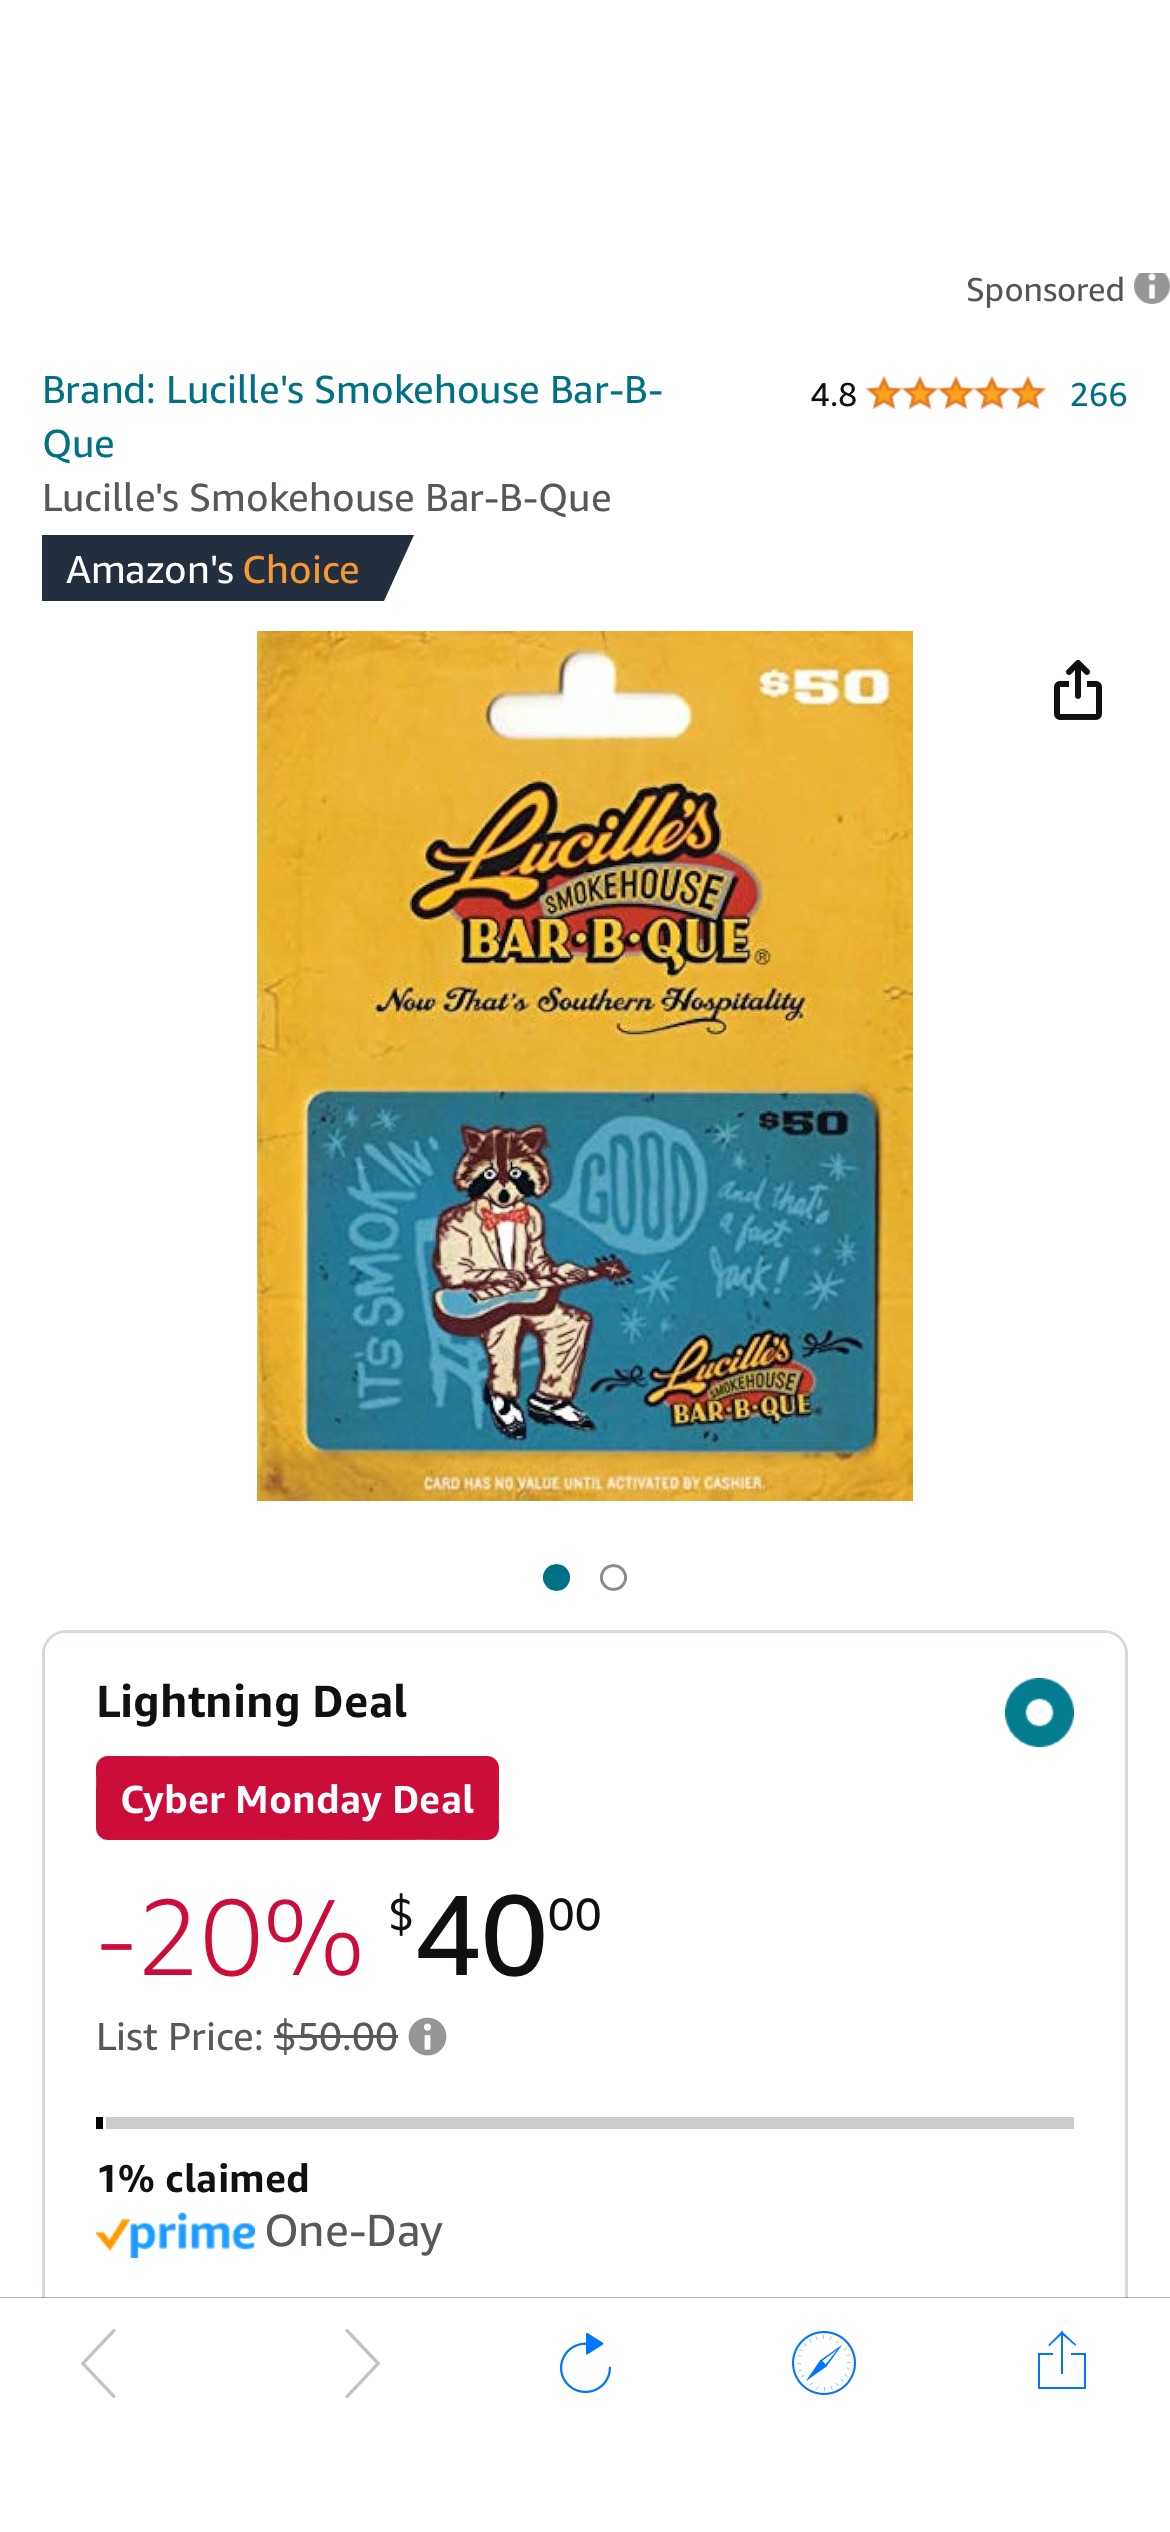 Amazon.com: Lucille's Smokehouse Bar-B-Que : Gift Cards八折